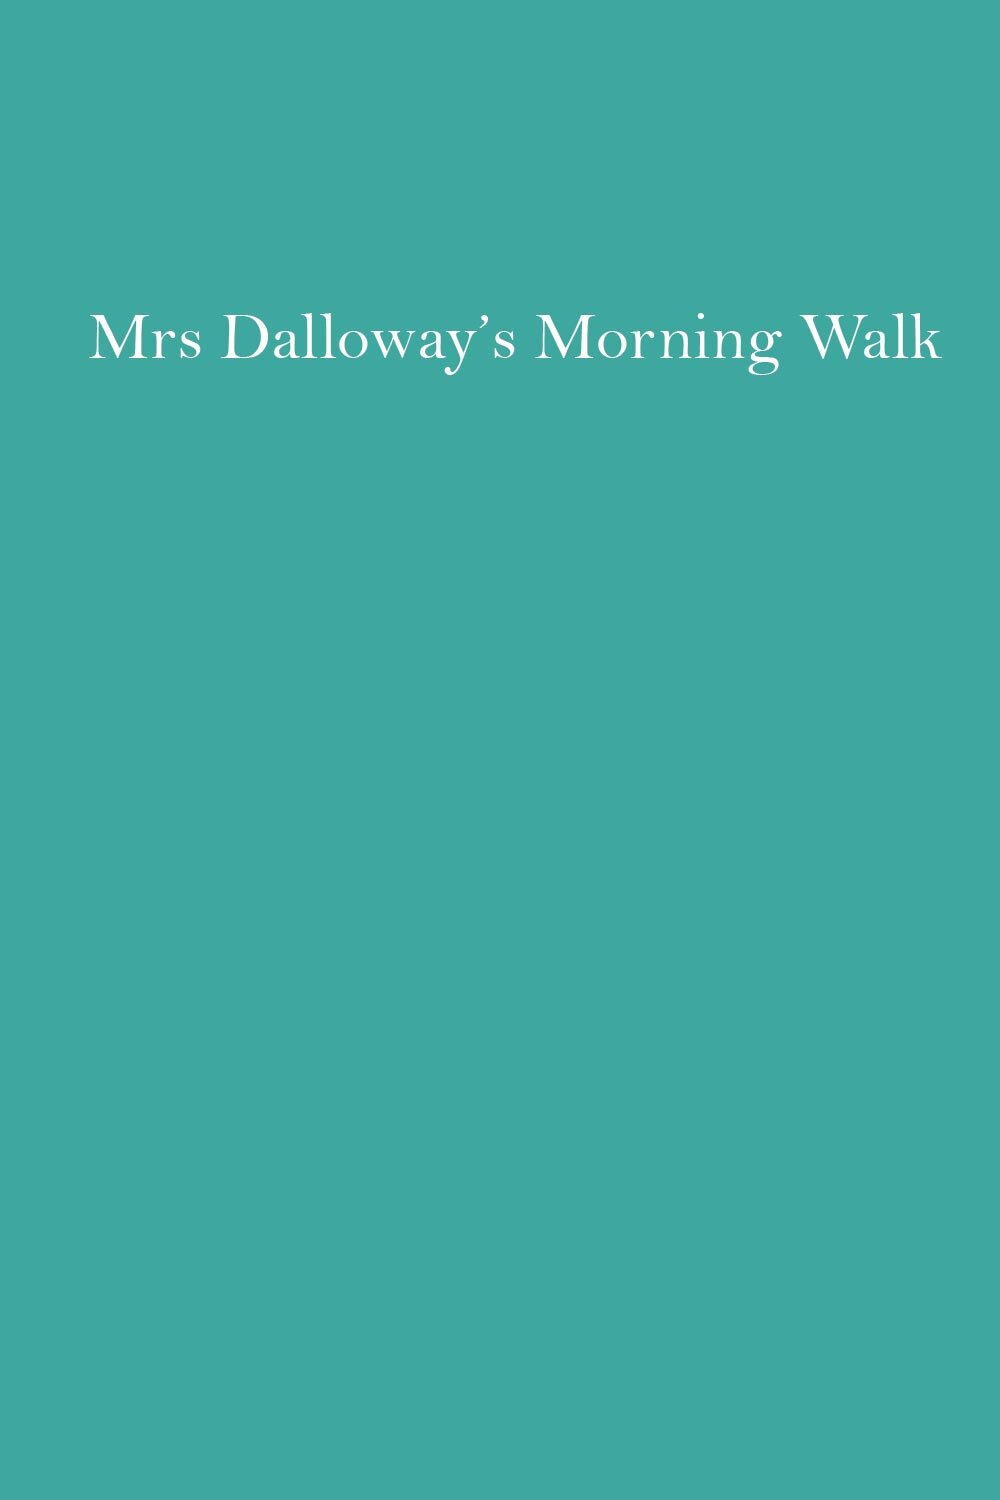 mrs-dalloways-morning-walk-book-cover.jpg